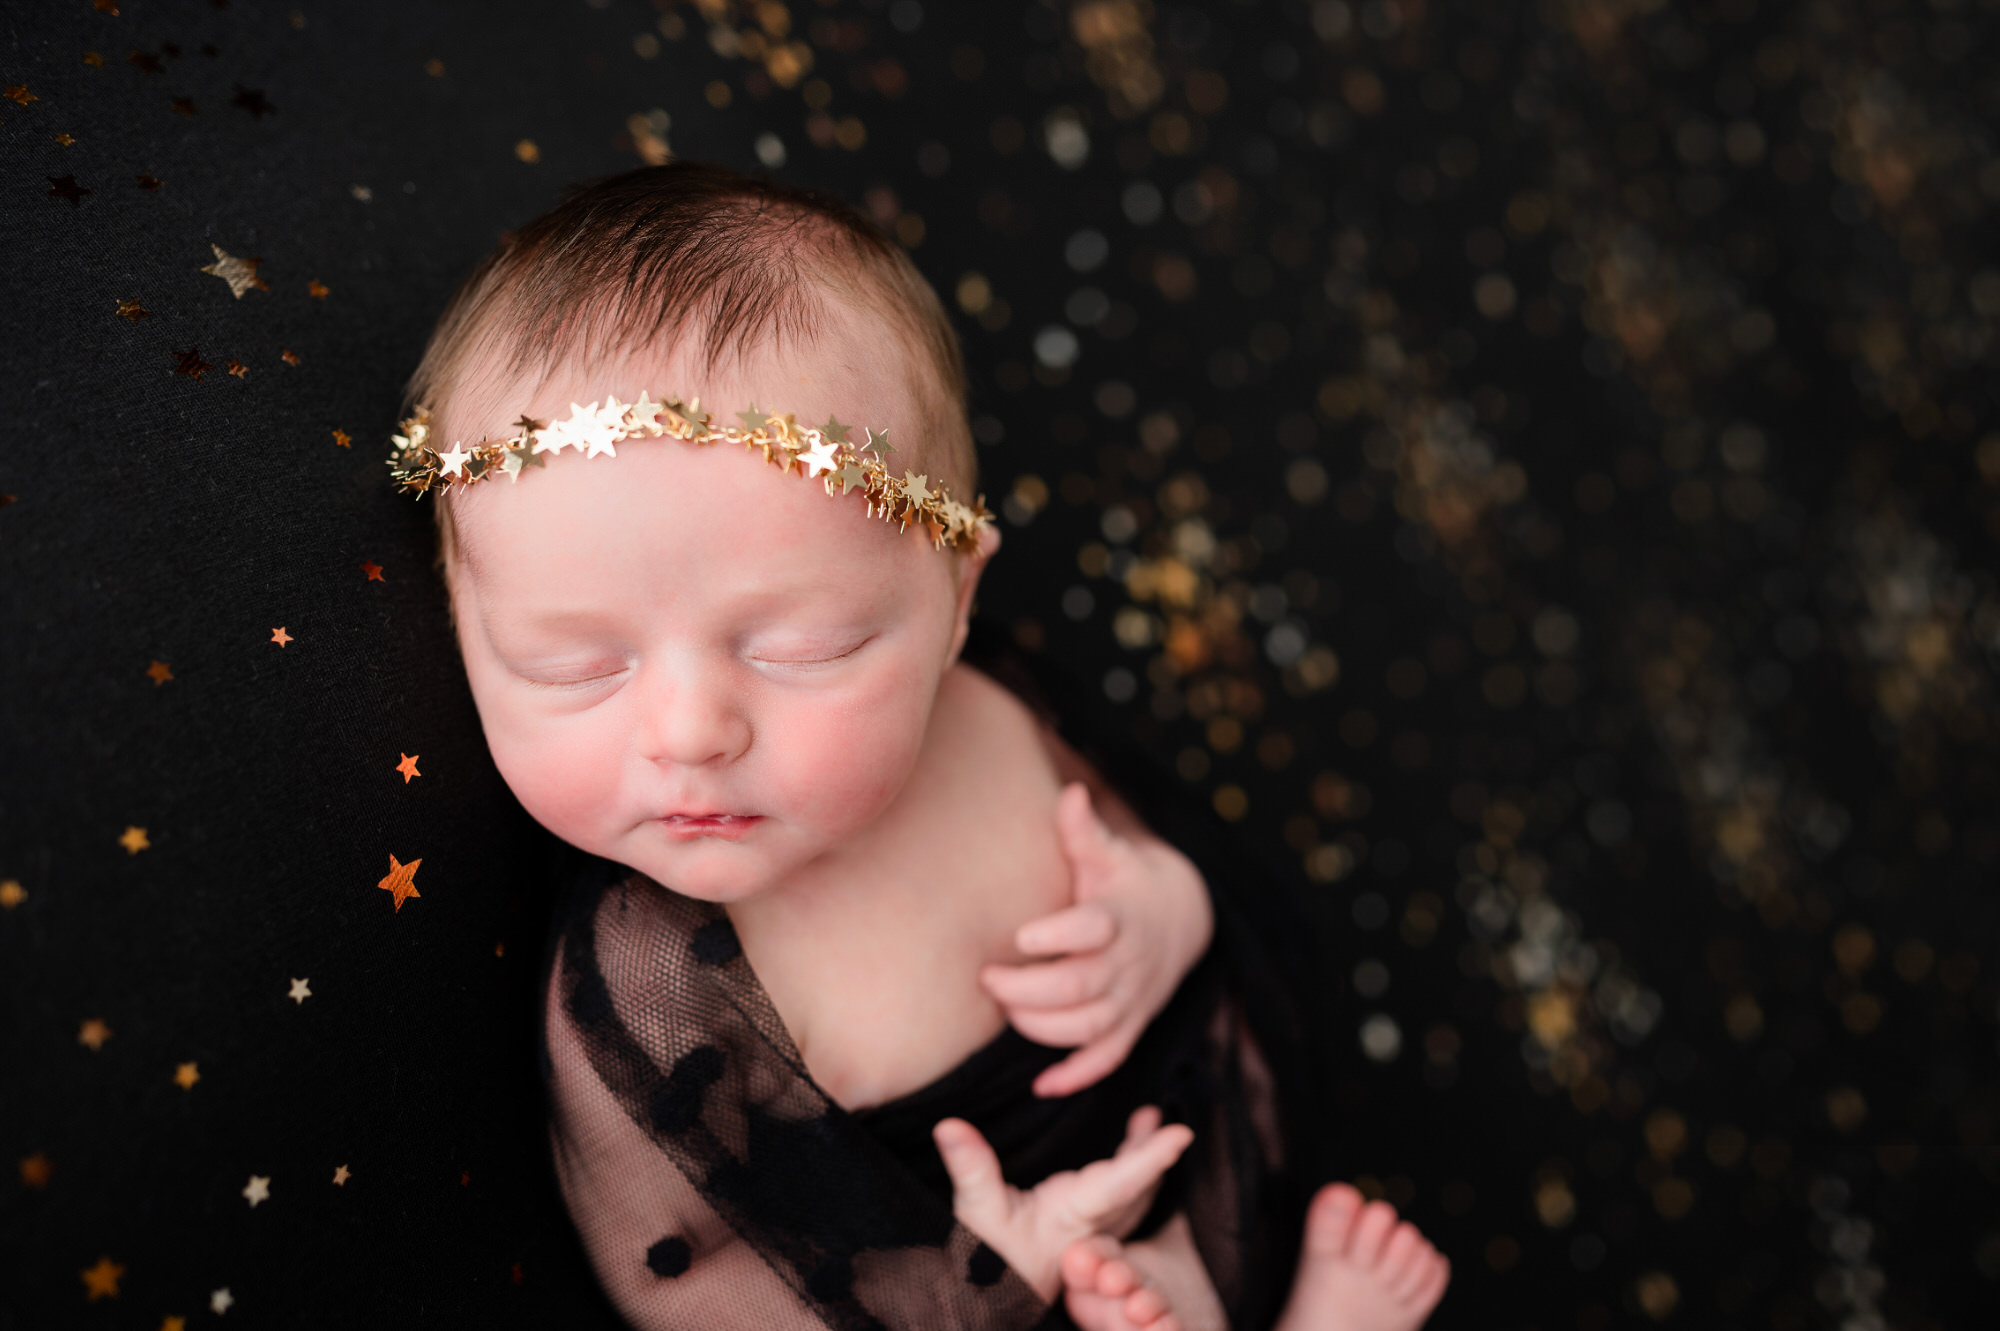 newborn baby photo in studio with gold stars • Baby